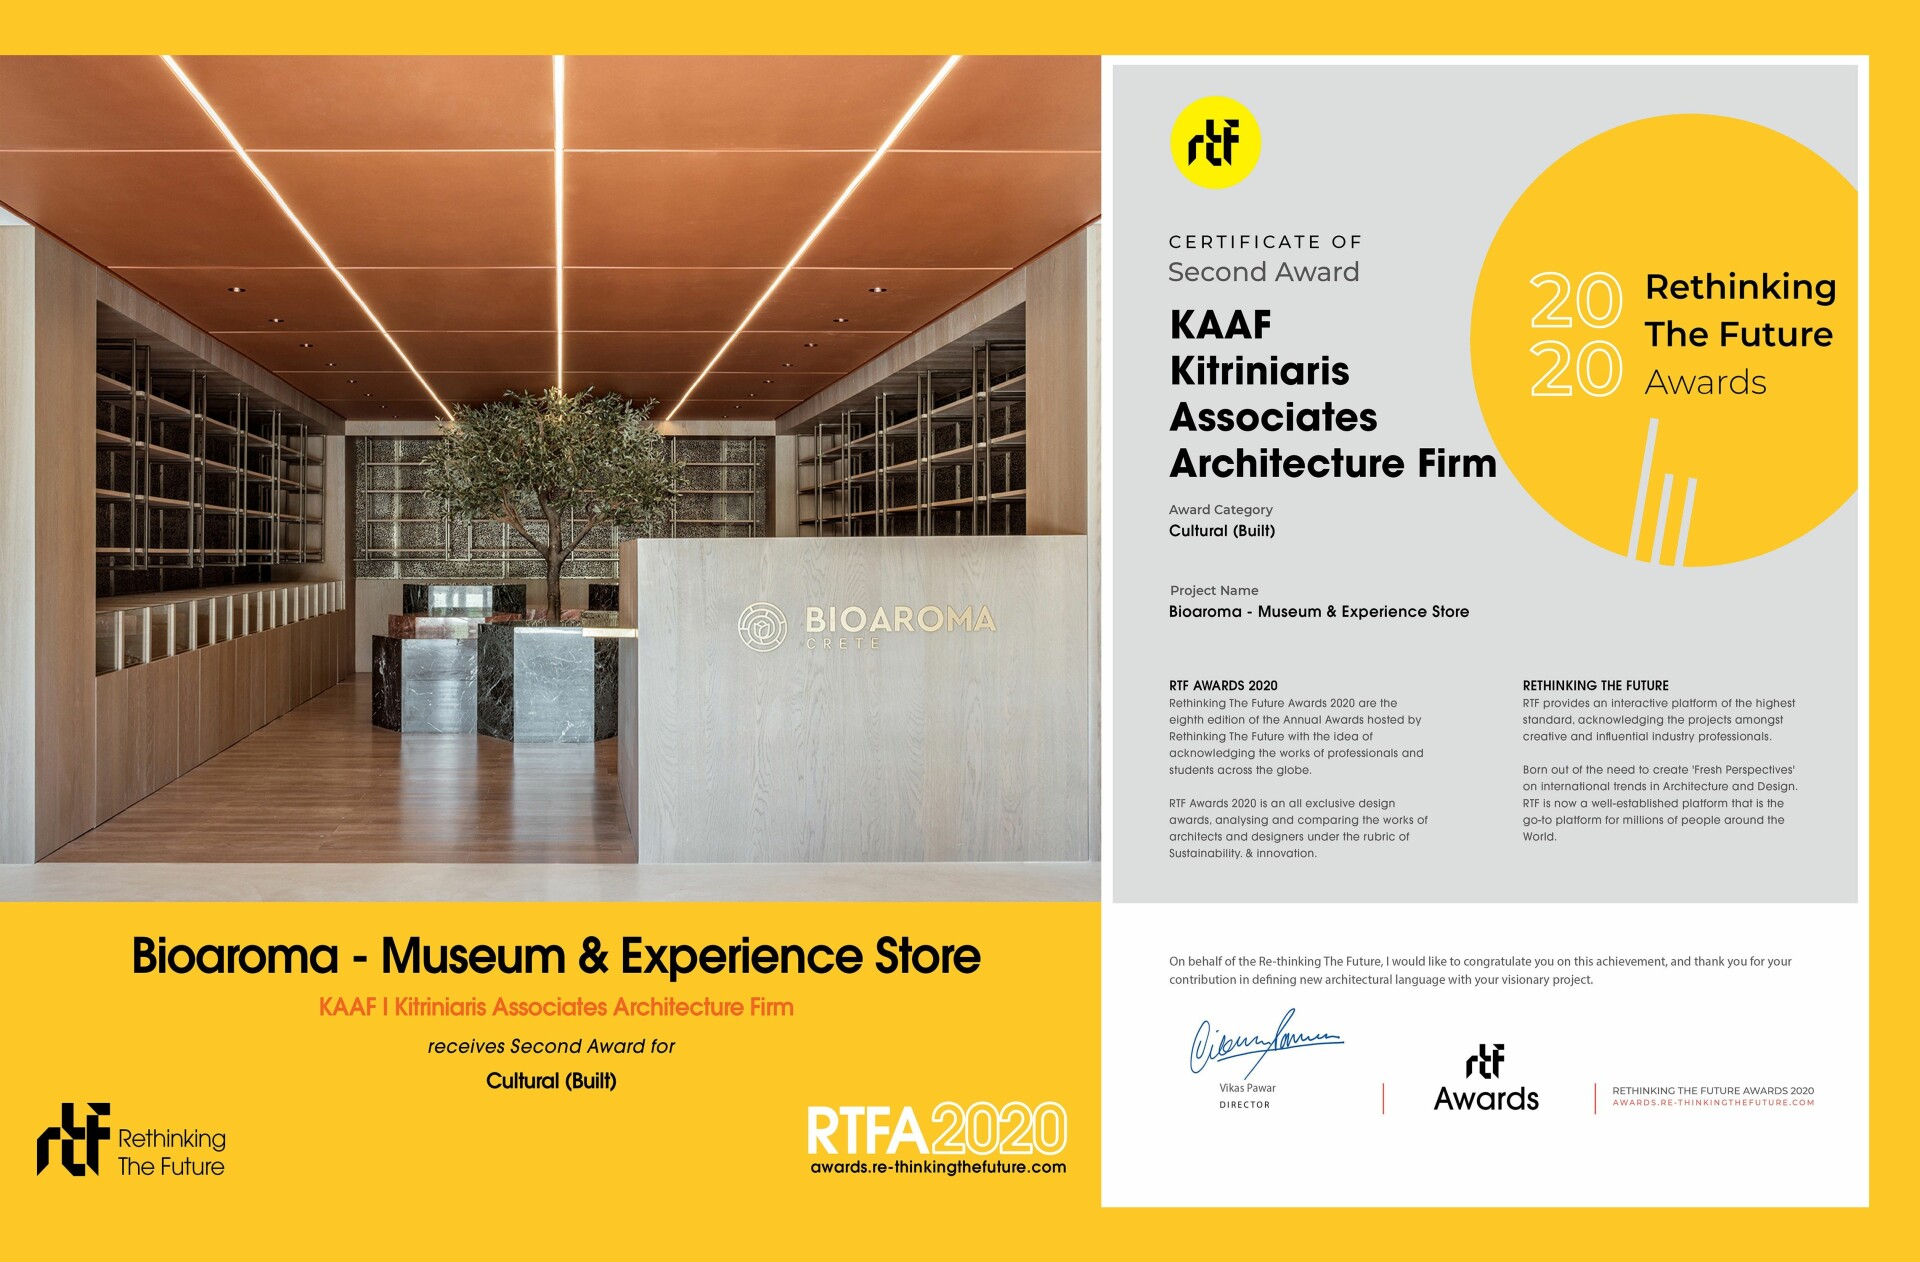 2nd Prize I RTF - Rethinking the Future International Architecture Awards 2020